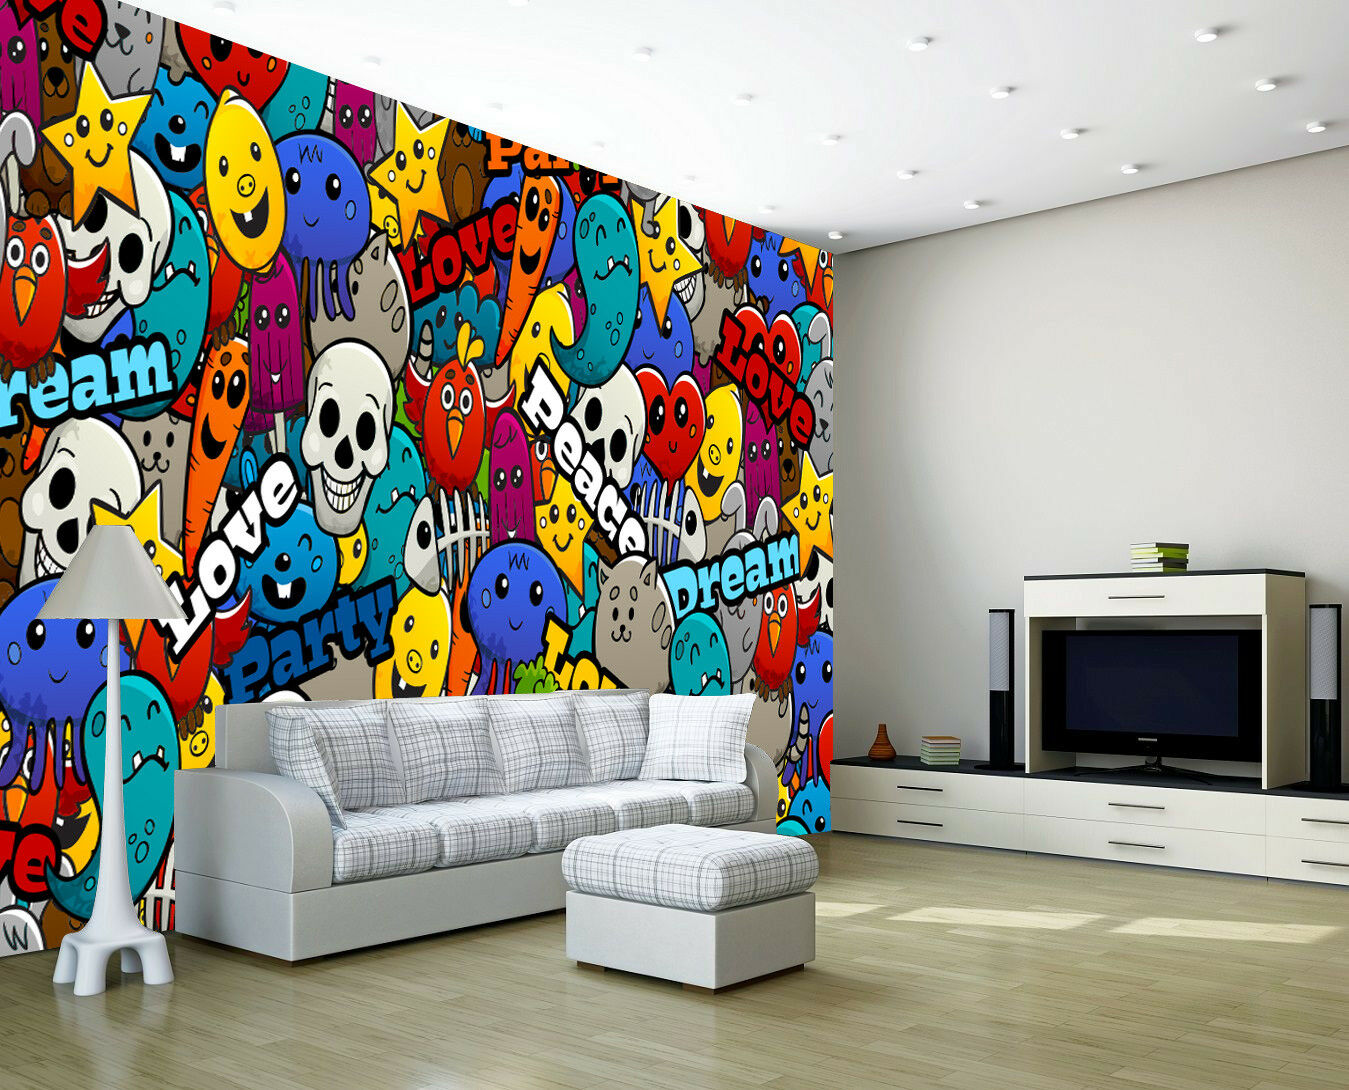 sticker wallpaper,living room,room,interior design,wall,wallpaper